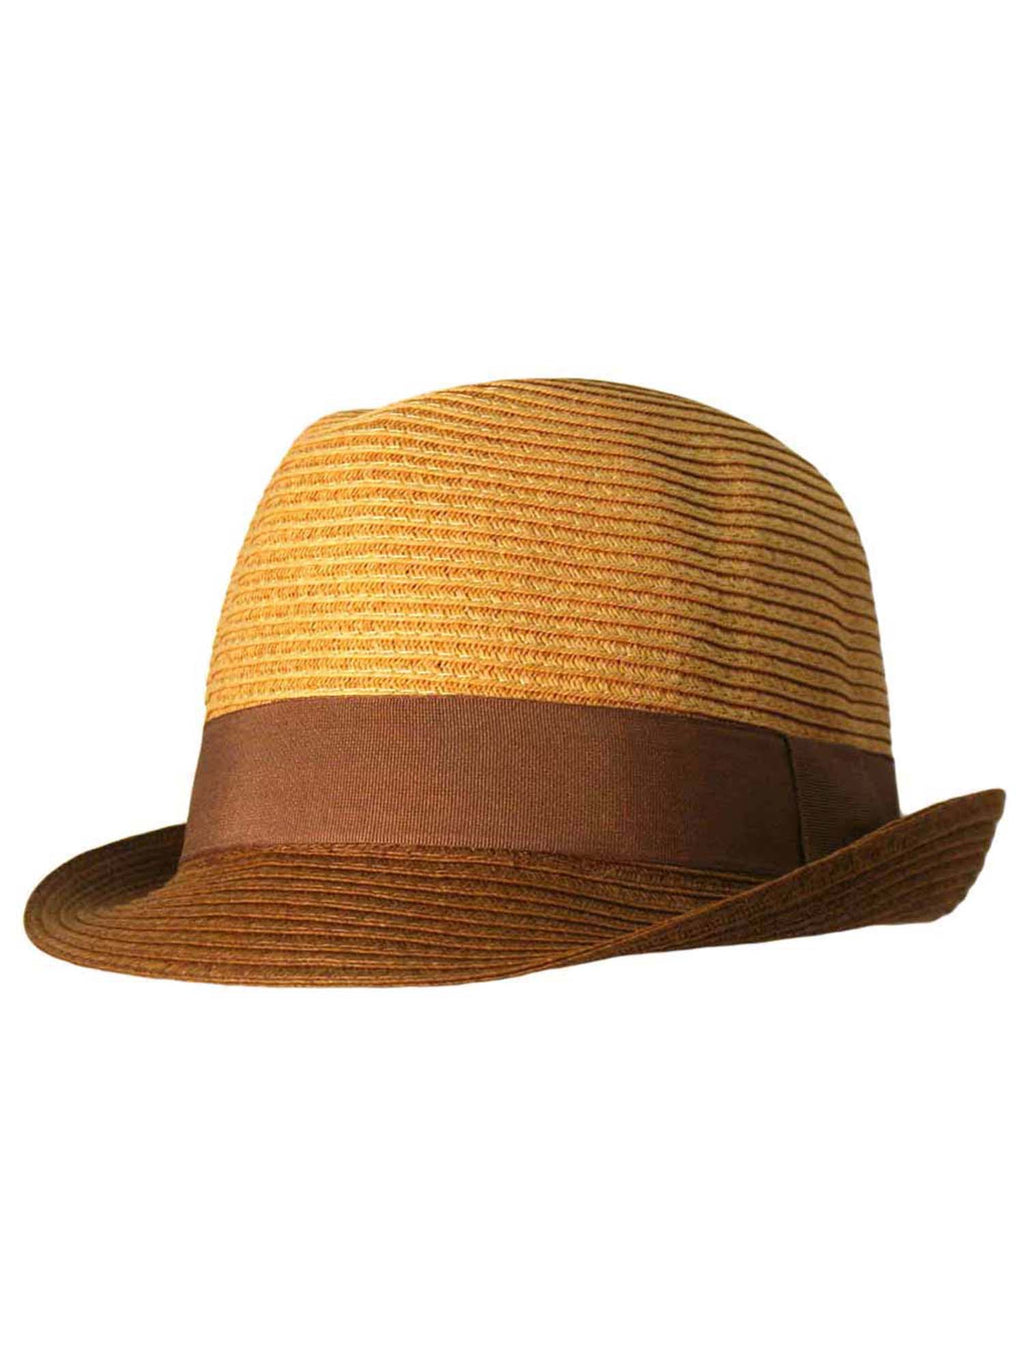 Two-Tone Straw Fedora Hat